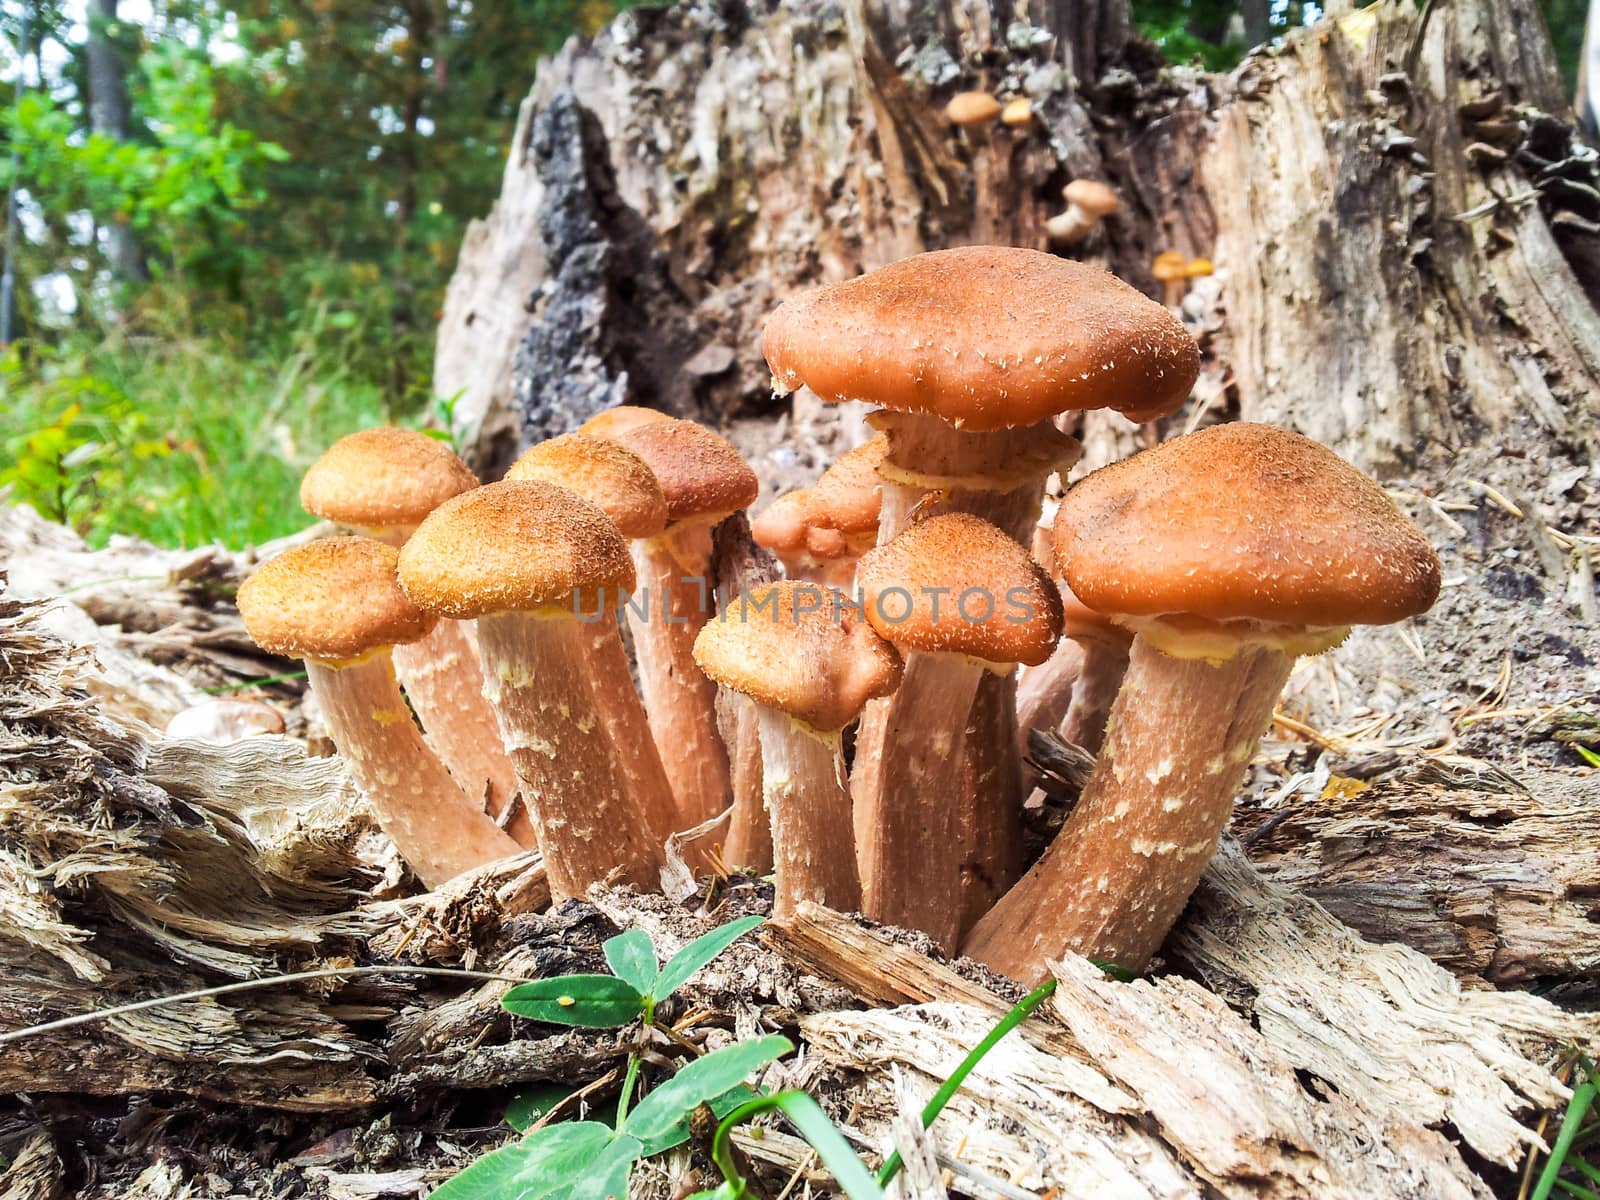 Brown mushrooms by Arvebettum